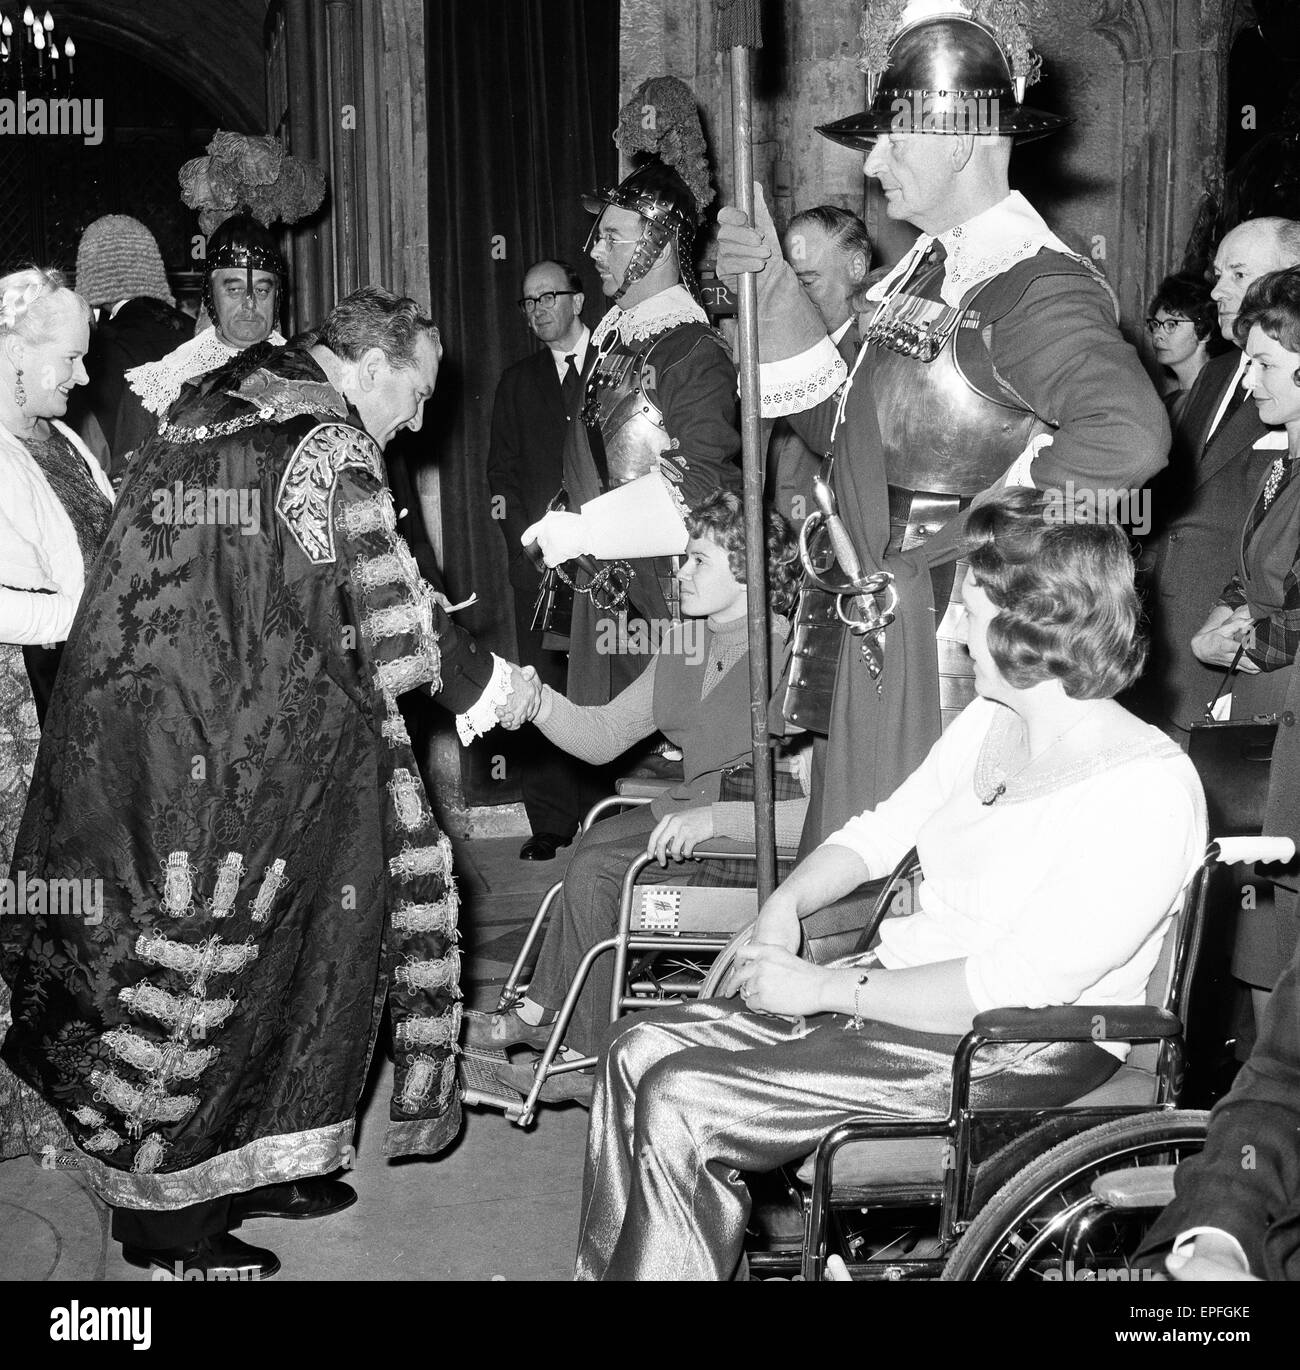 Britischen Abschnitt Olympiern, Ehrengast des Lord Mayor of London, im Mansion House, City of London, nach ihrer Rückkehr von der Paralympischen Spiele in Tokio; 5. Dezember 1964. Stockfoto